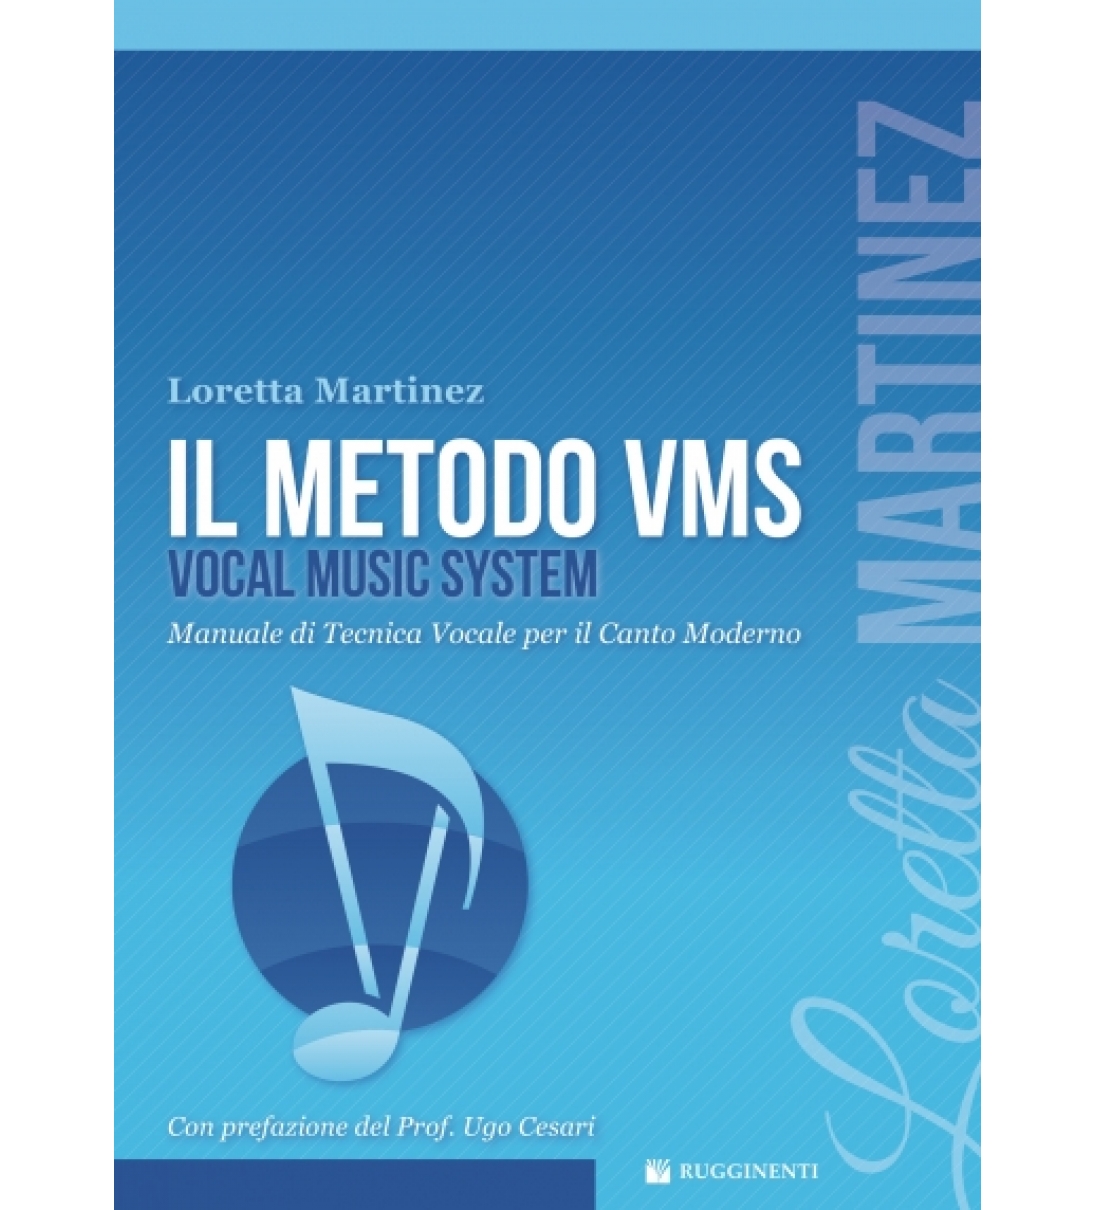  Il Metodo VMS (con CD)